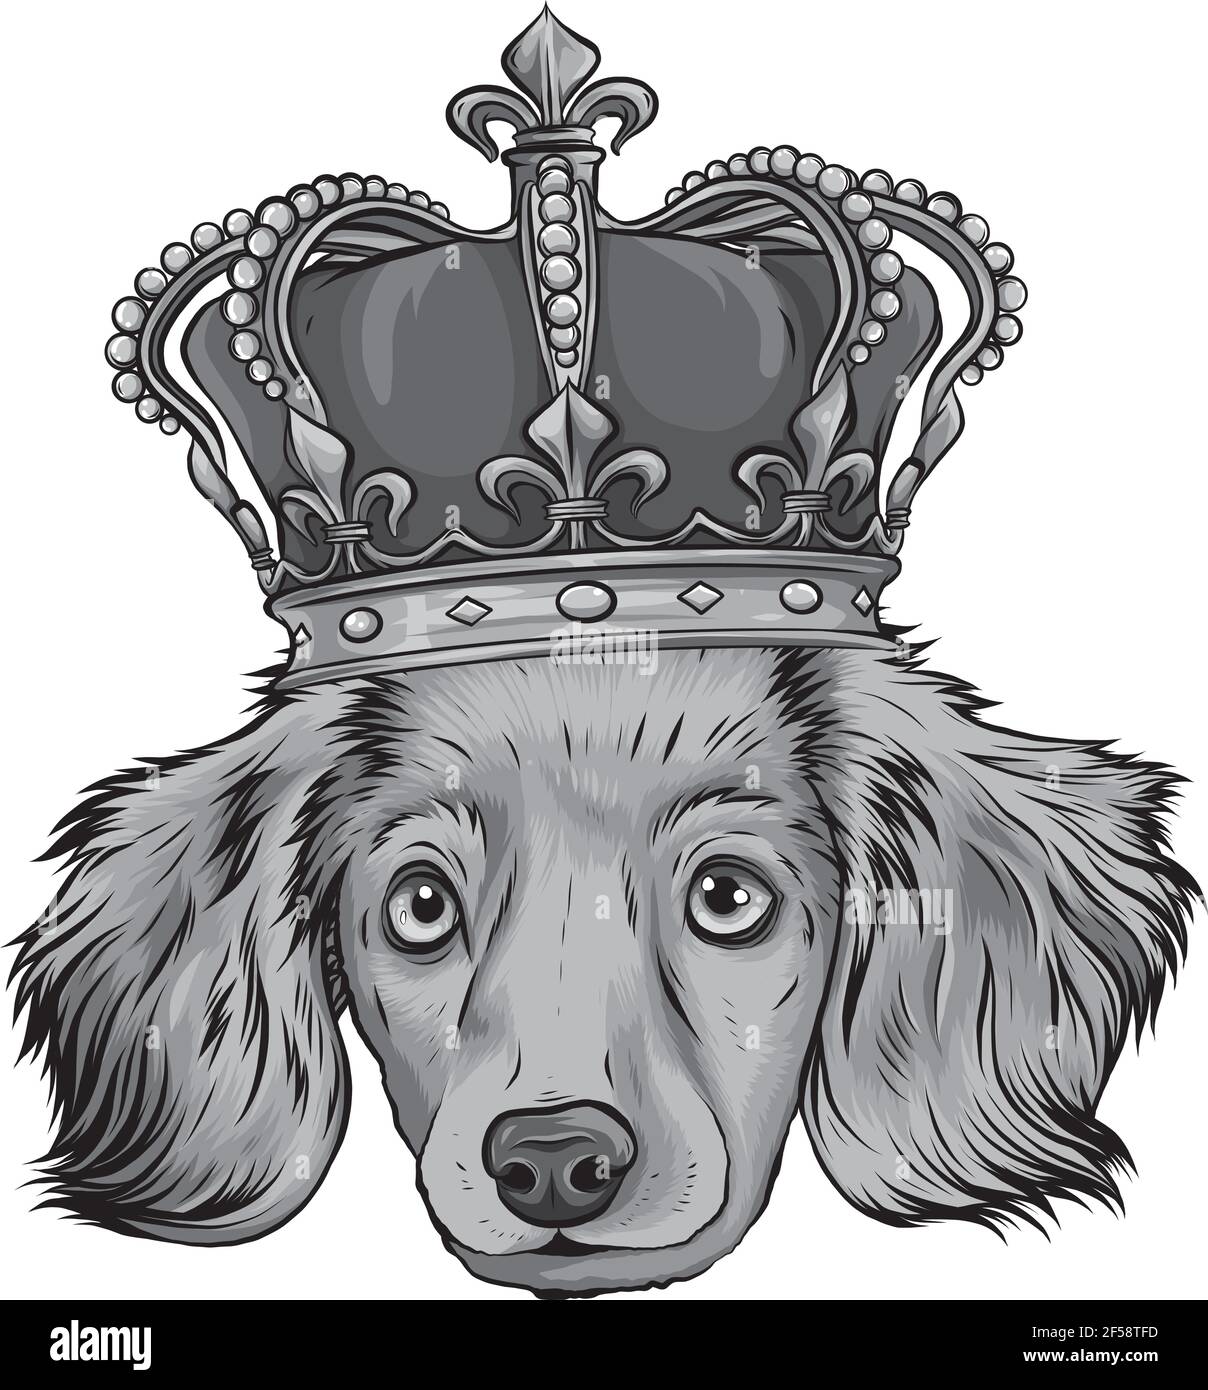 Disegno vettoriale della testa Re di cane su sfondo bianco Illustrazione Vettoriale